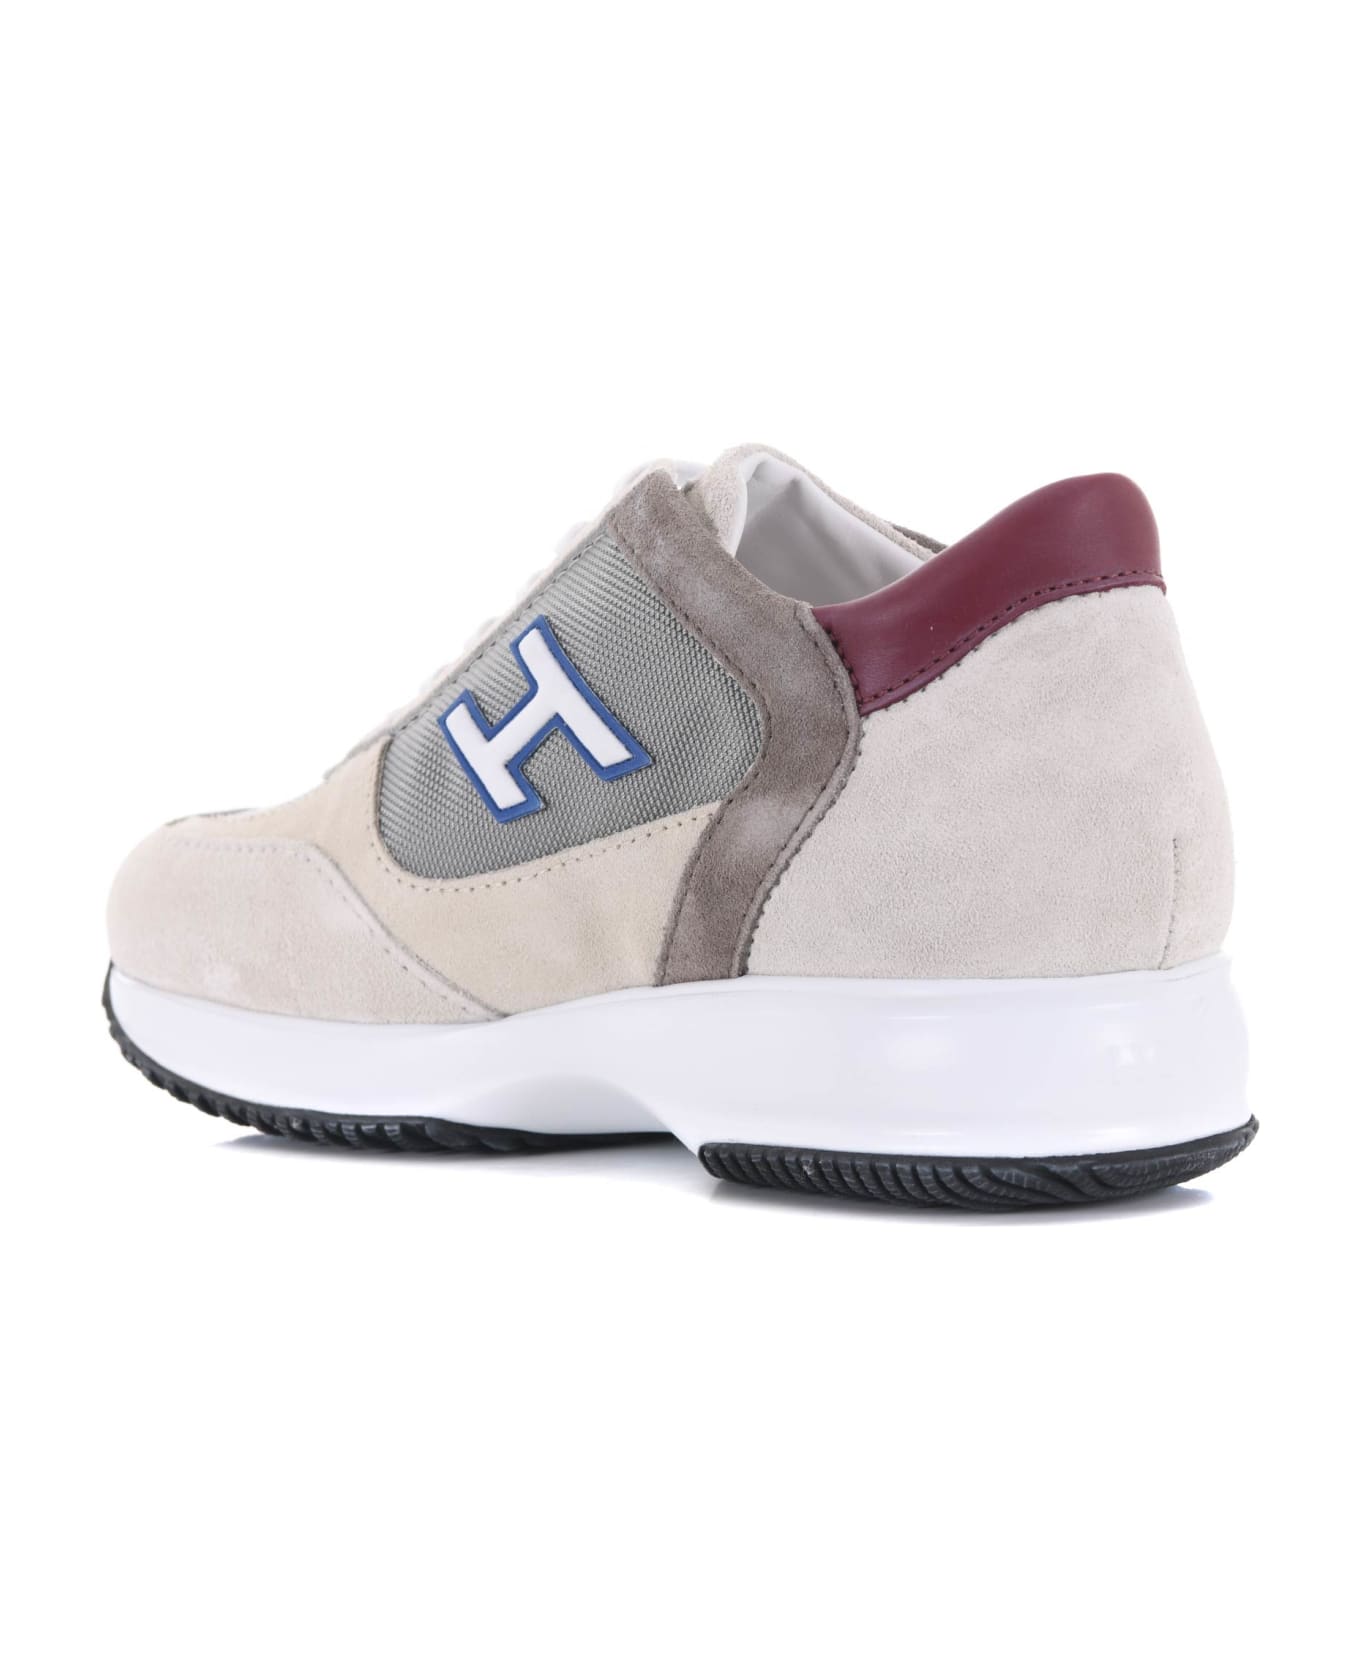 Hogan Sneakers - Panna/grigio